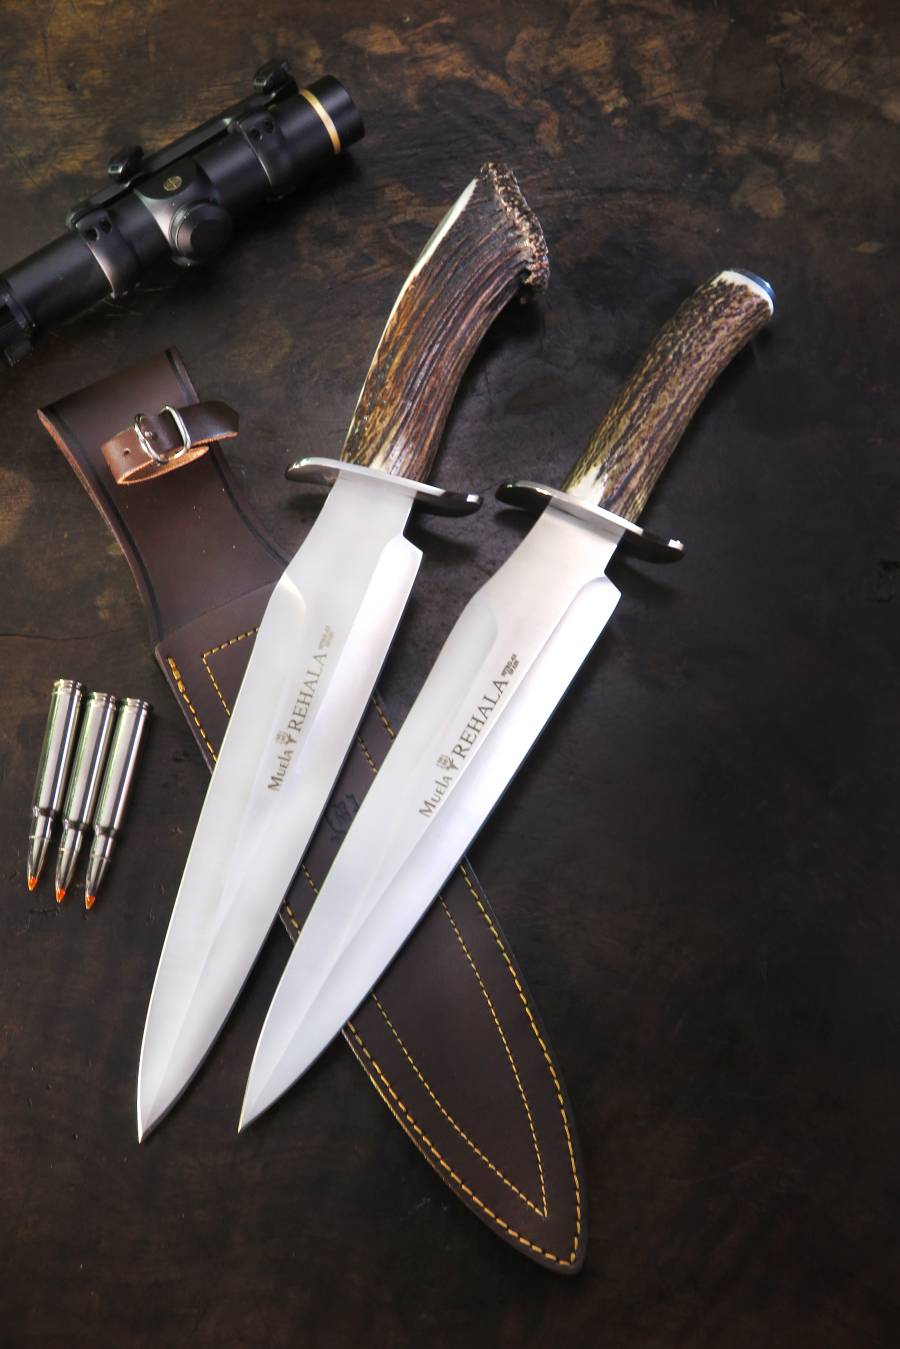 Nueva línea de cuchillos de remate en acero “NITRO-42”. Modelos Rehala 27A, Rehala 27S